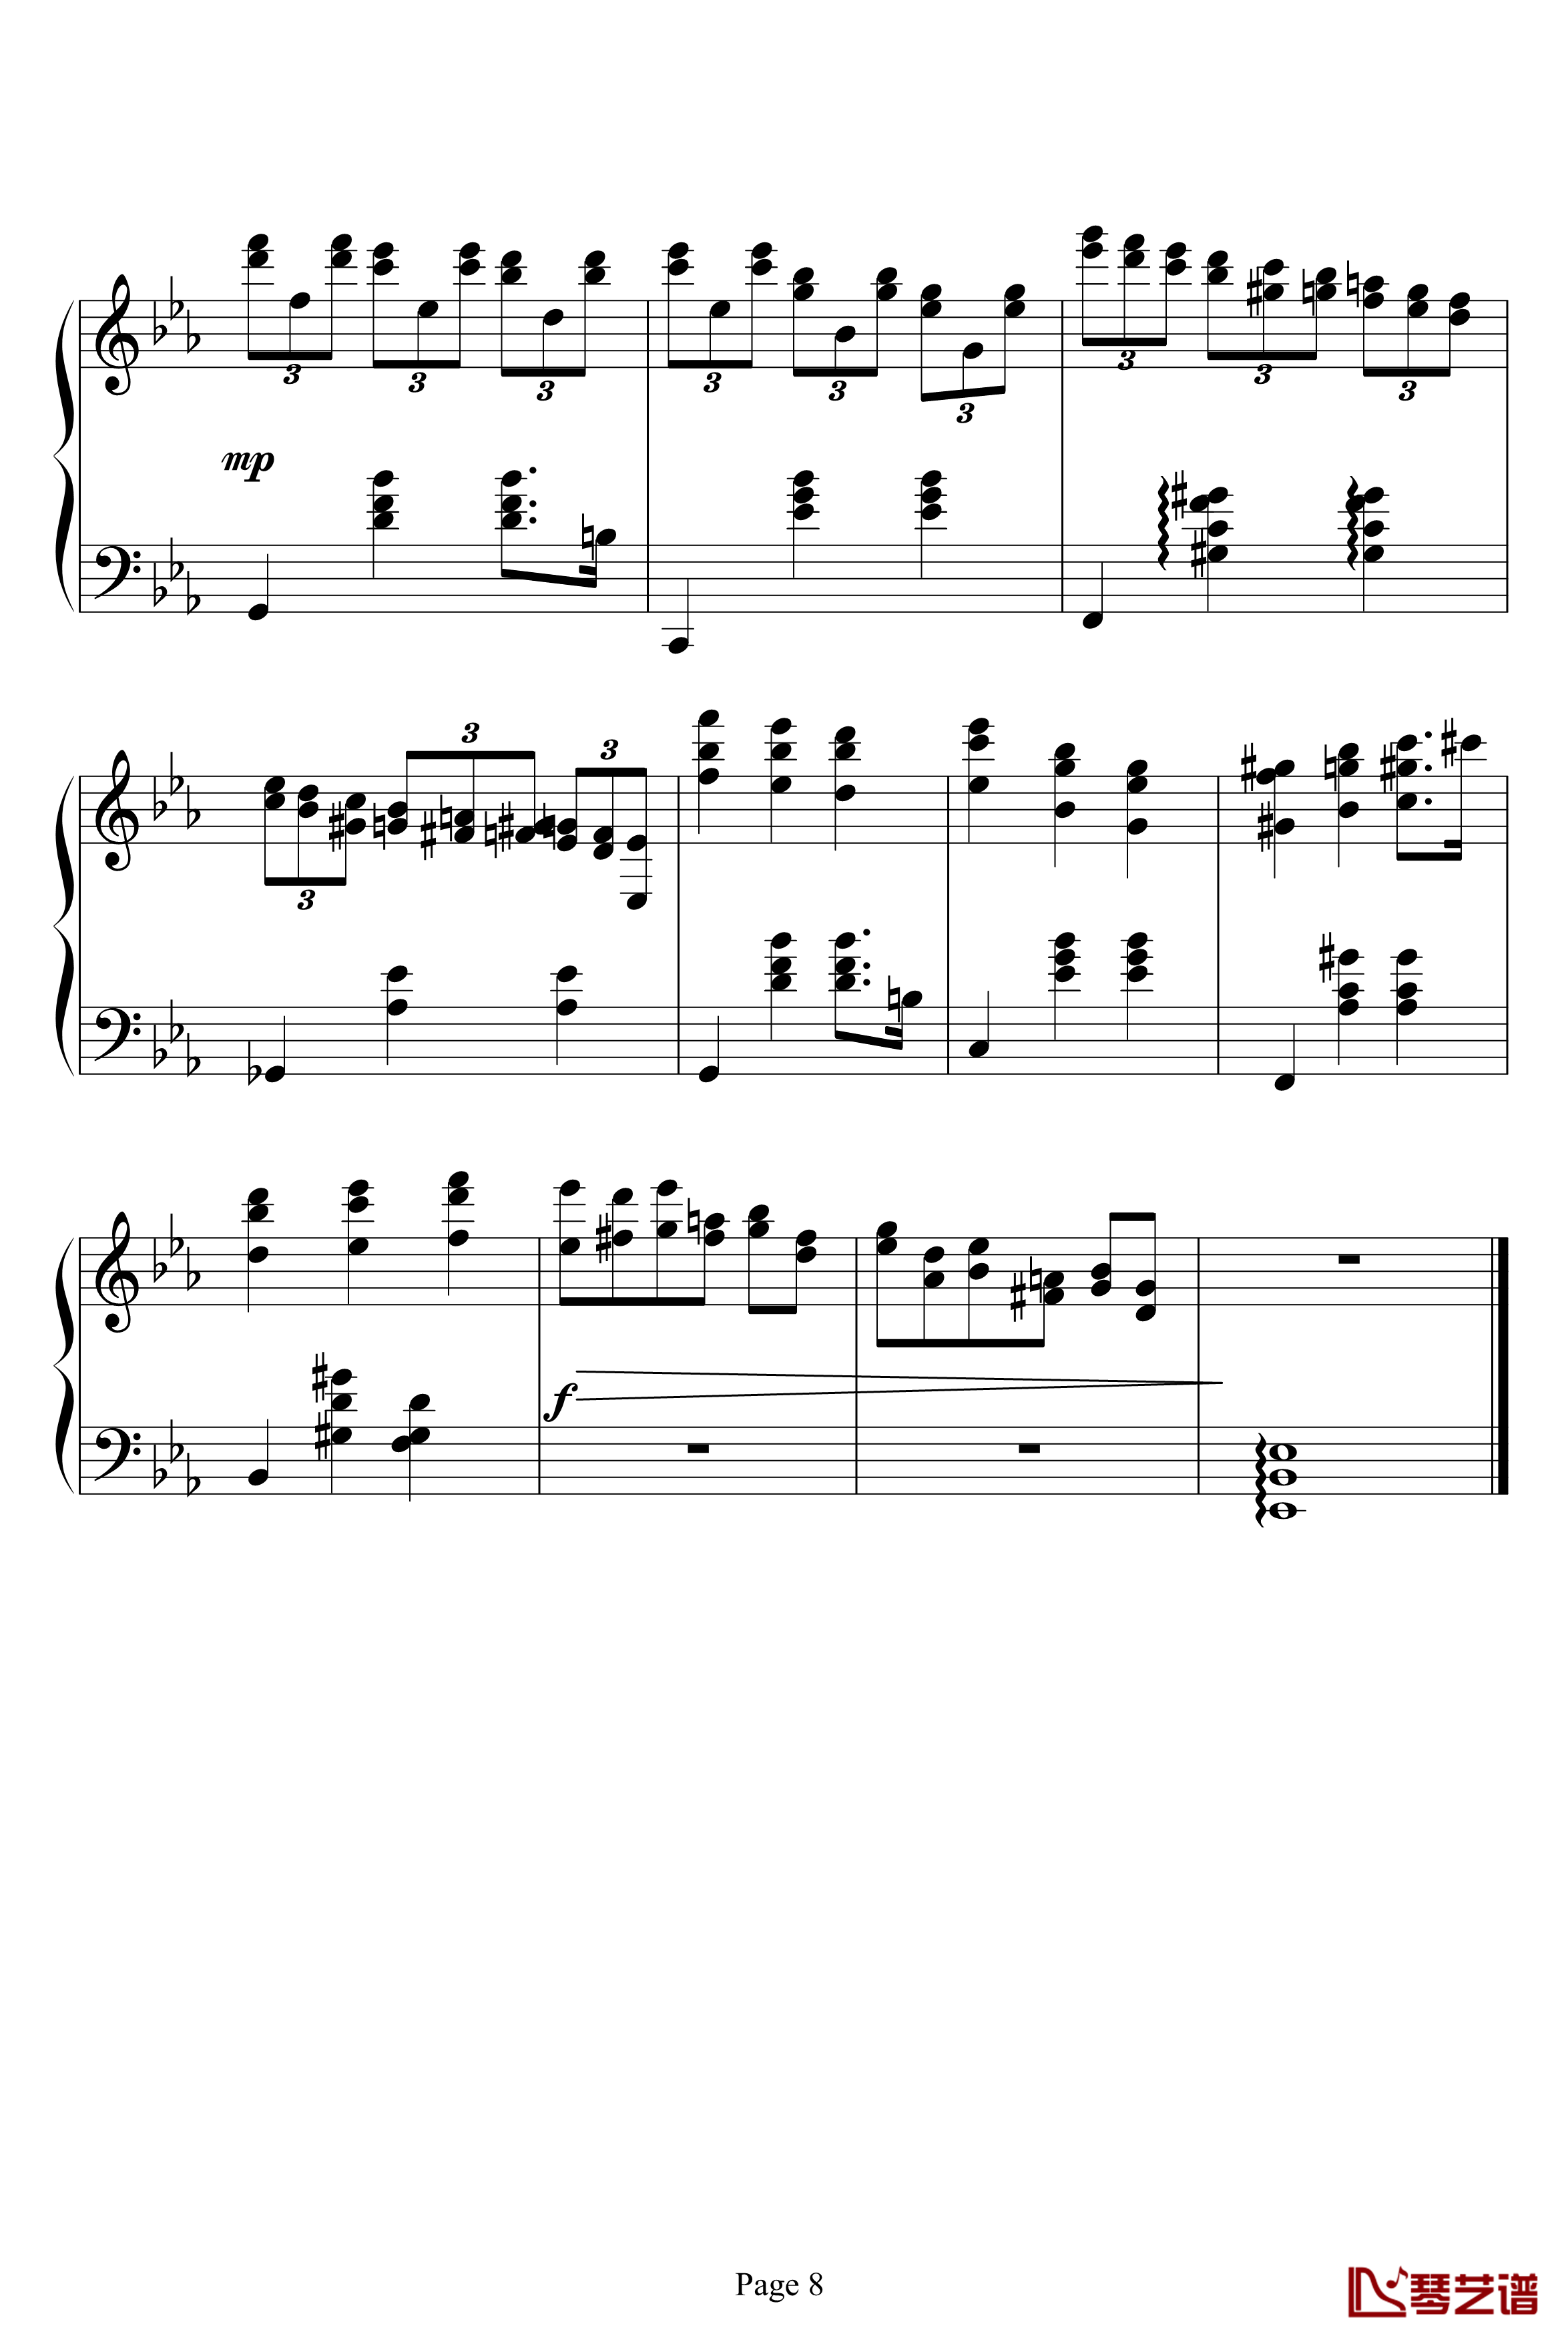 Magic Waltz钢琴谱-海上钢琴师8